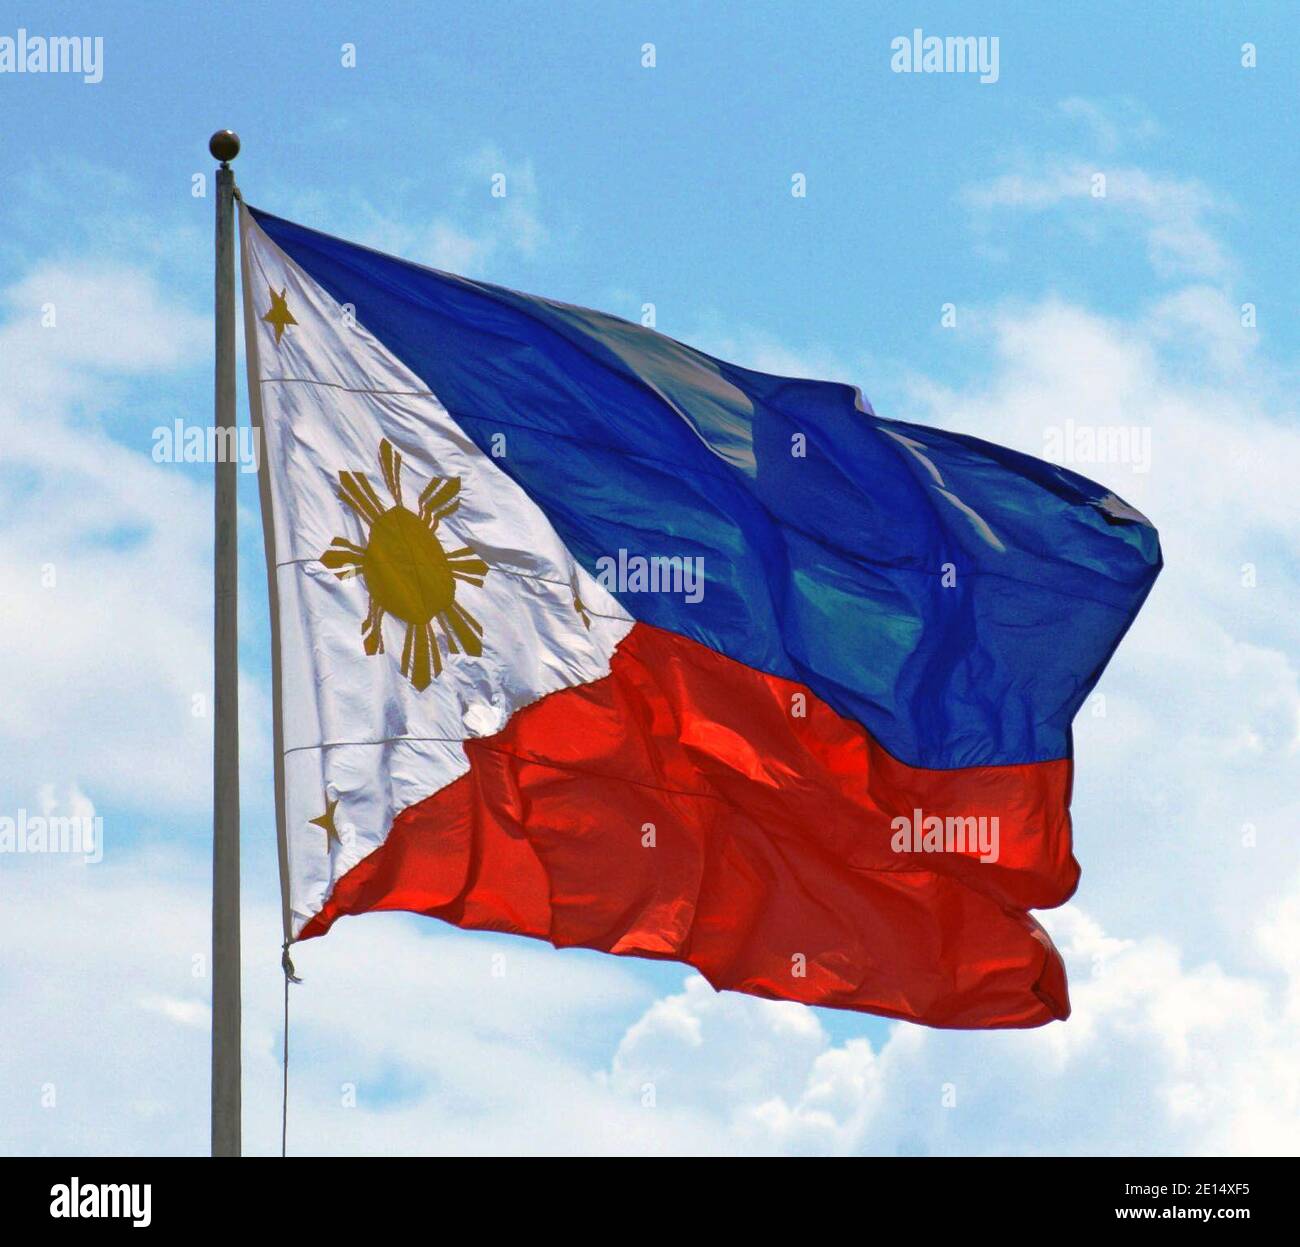 Le drapeau national de la République des Philippines sur un poteau de drapeau dans la capitale Manille. Le bleu royal représente la paix, la vérité et la justice, tandis que le rouge cramoisi représente le patriotisme et la vaillance. Le triangle équilatéral représente la liberté, l'égalité et la fraternité. Le grand soleil a 8 rayons représentant les 8 provinces qui se sont révoltées contre l'Espagne. Les trois petites étoiles représentent les trois grandes îles de Luzon, Visayas et Mindanao. Banque D'Images